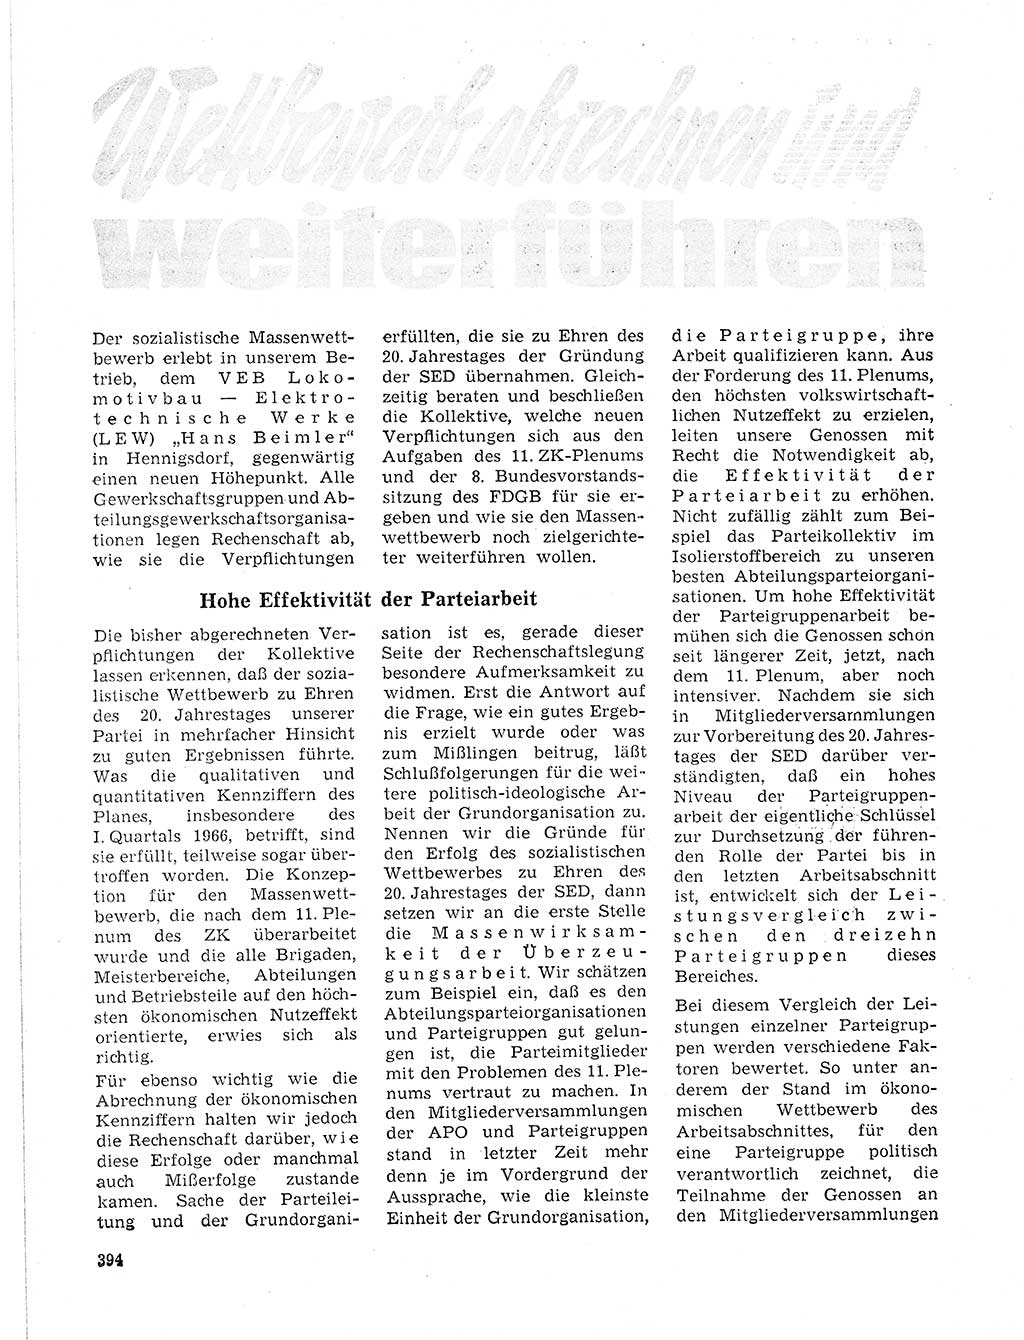 Neuer Weg (NW), Organ des Zentralkomitees (ZK) der SED (Sozialistische Einheitspartei Deutschlands) für Fragen des Parteilebens, 21. Jahrgang [Deutsche Demokratische Republik (DDR)] 1966, Seite 394 (NW ZK SED DDR 1966, S. 394)